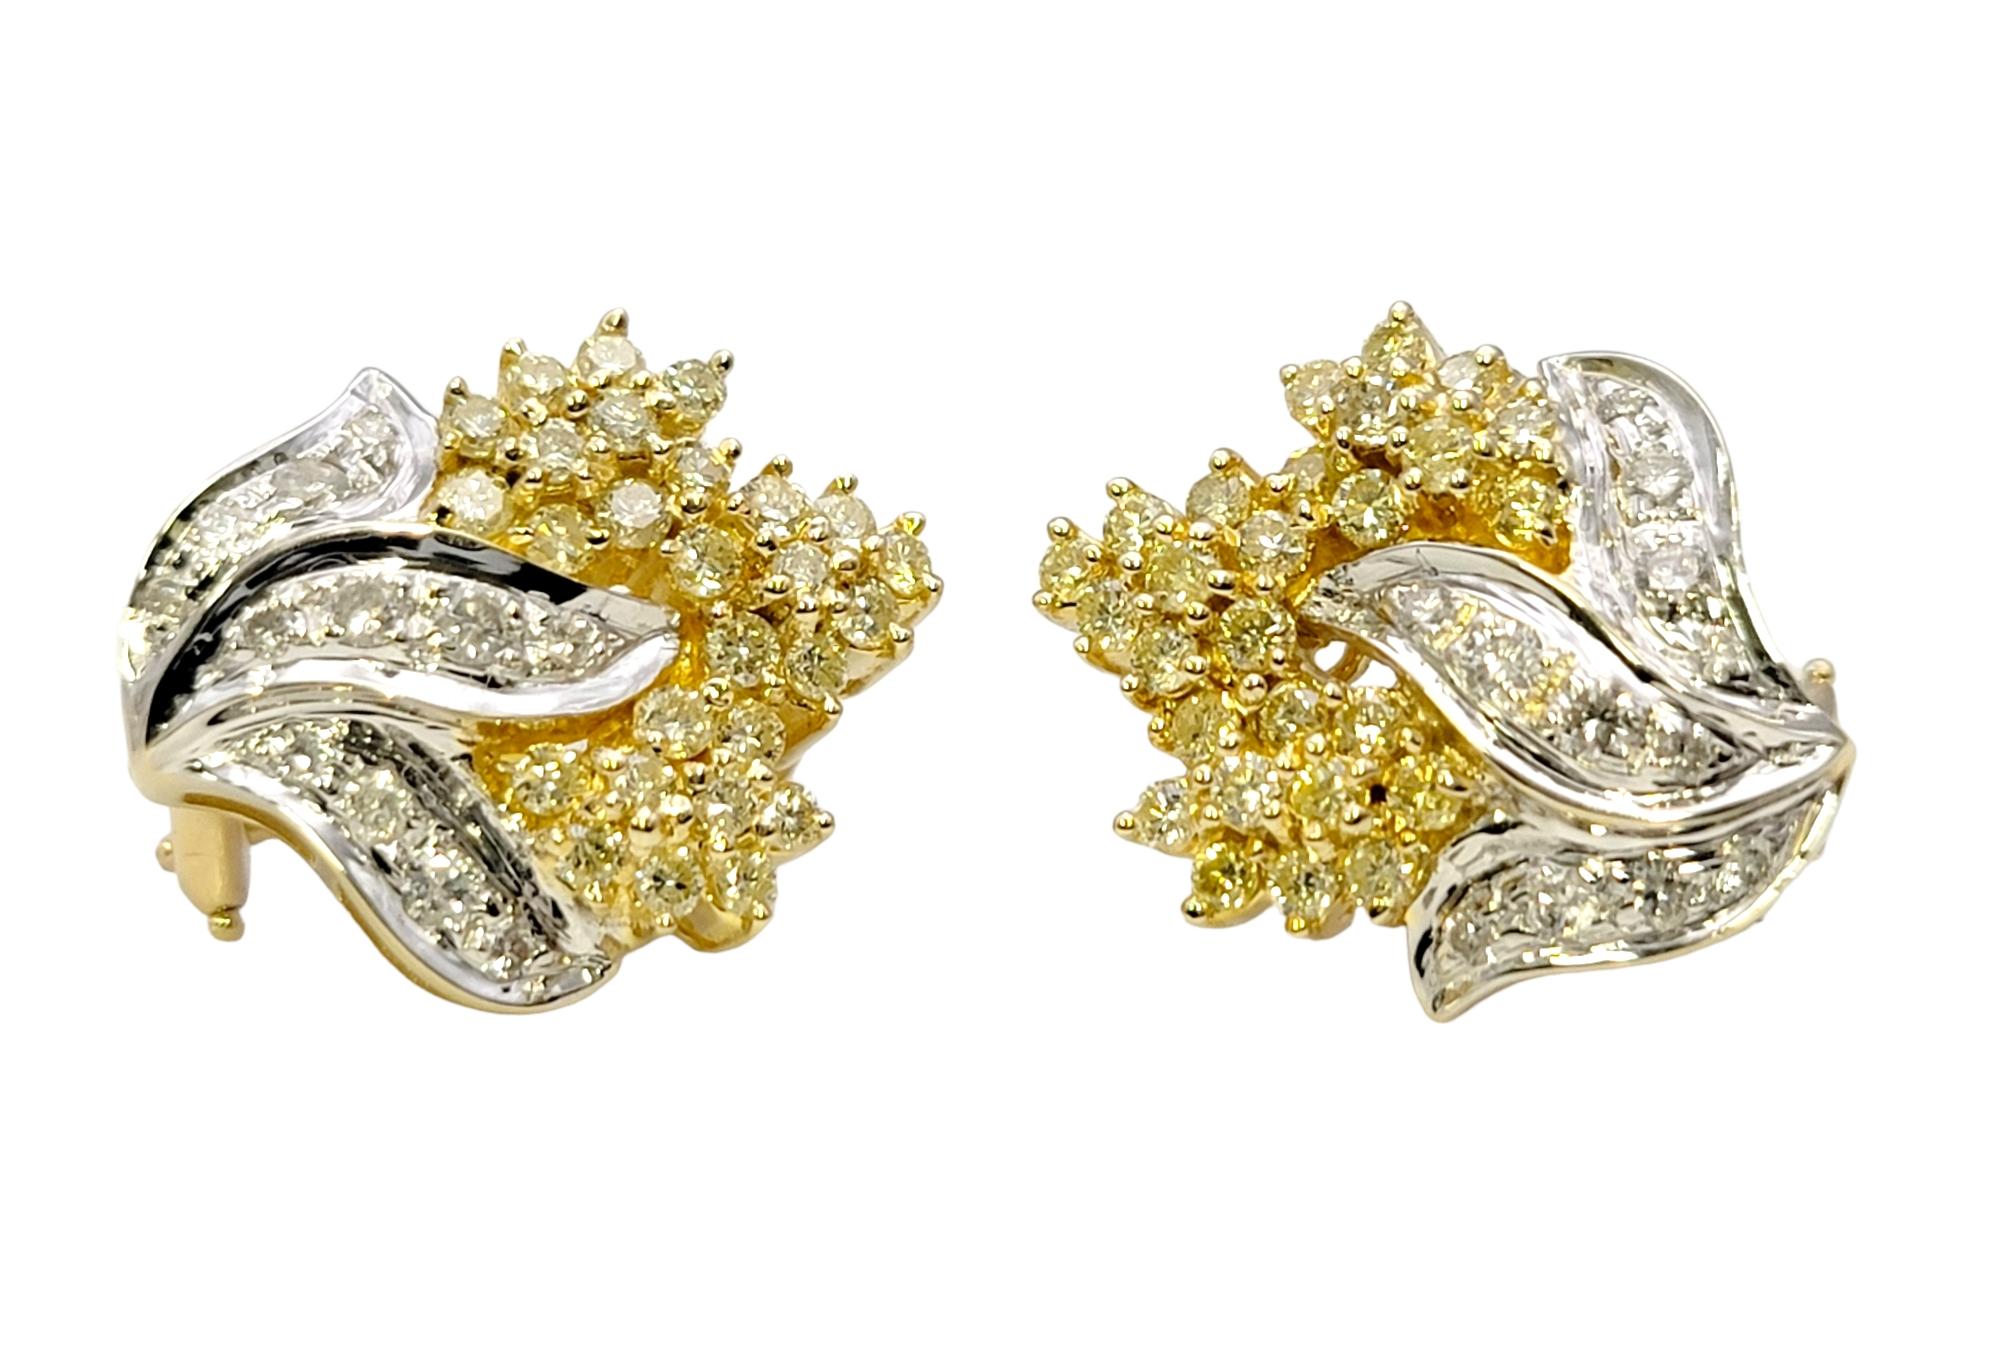 Diese super funkelnden Diamant-Cluster-Ohrringe leuchten absolut. Das elegante zweifarbige Design kommt auf dem Ohrläppchen wunderbar zur Geltung und sorgt für einen schicken und glamourösen Look. 

Diese wunderschönen Ohrringe sind mit schimmernden